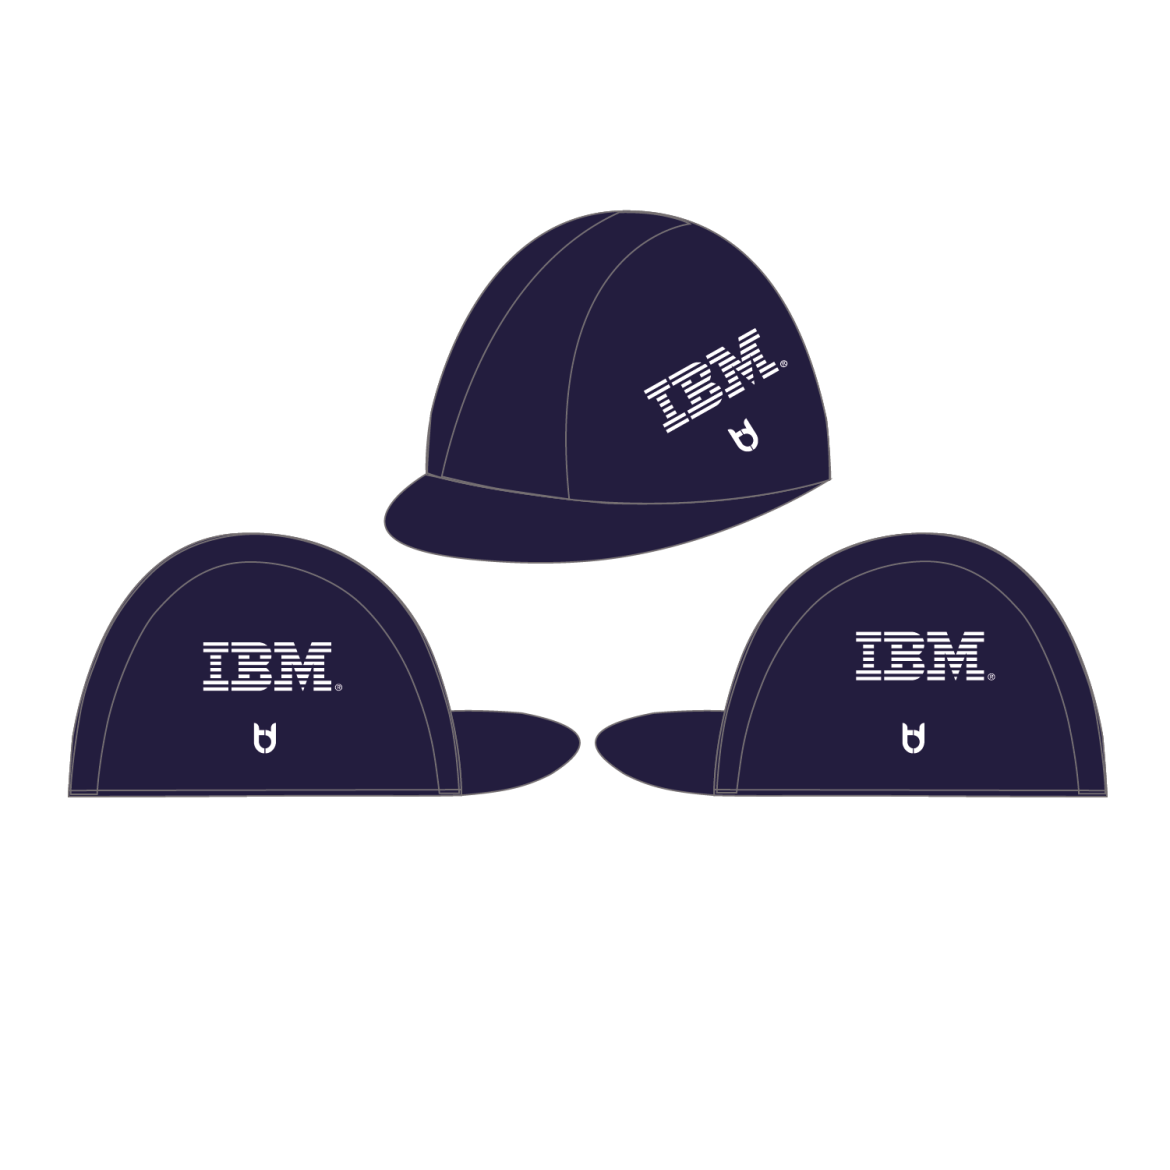 IBM wielerpet TD sportswear